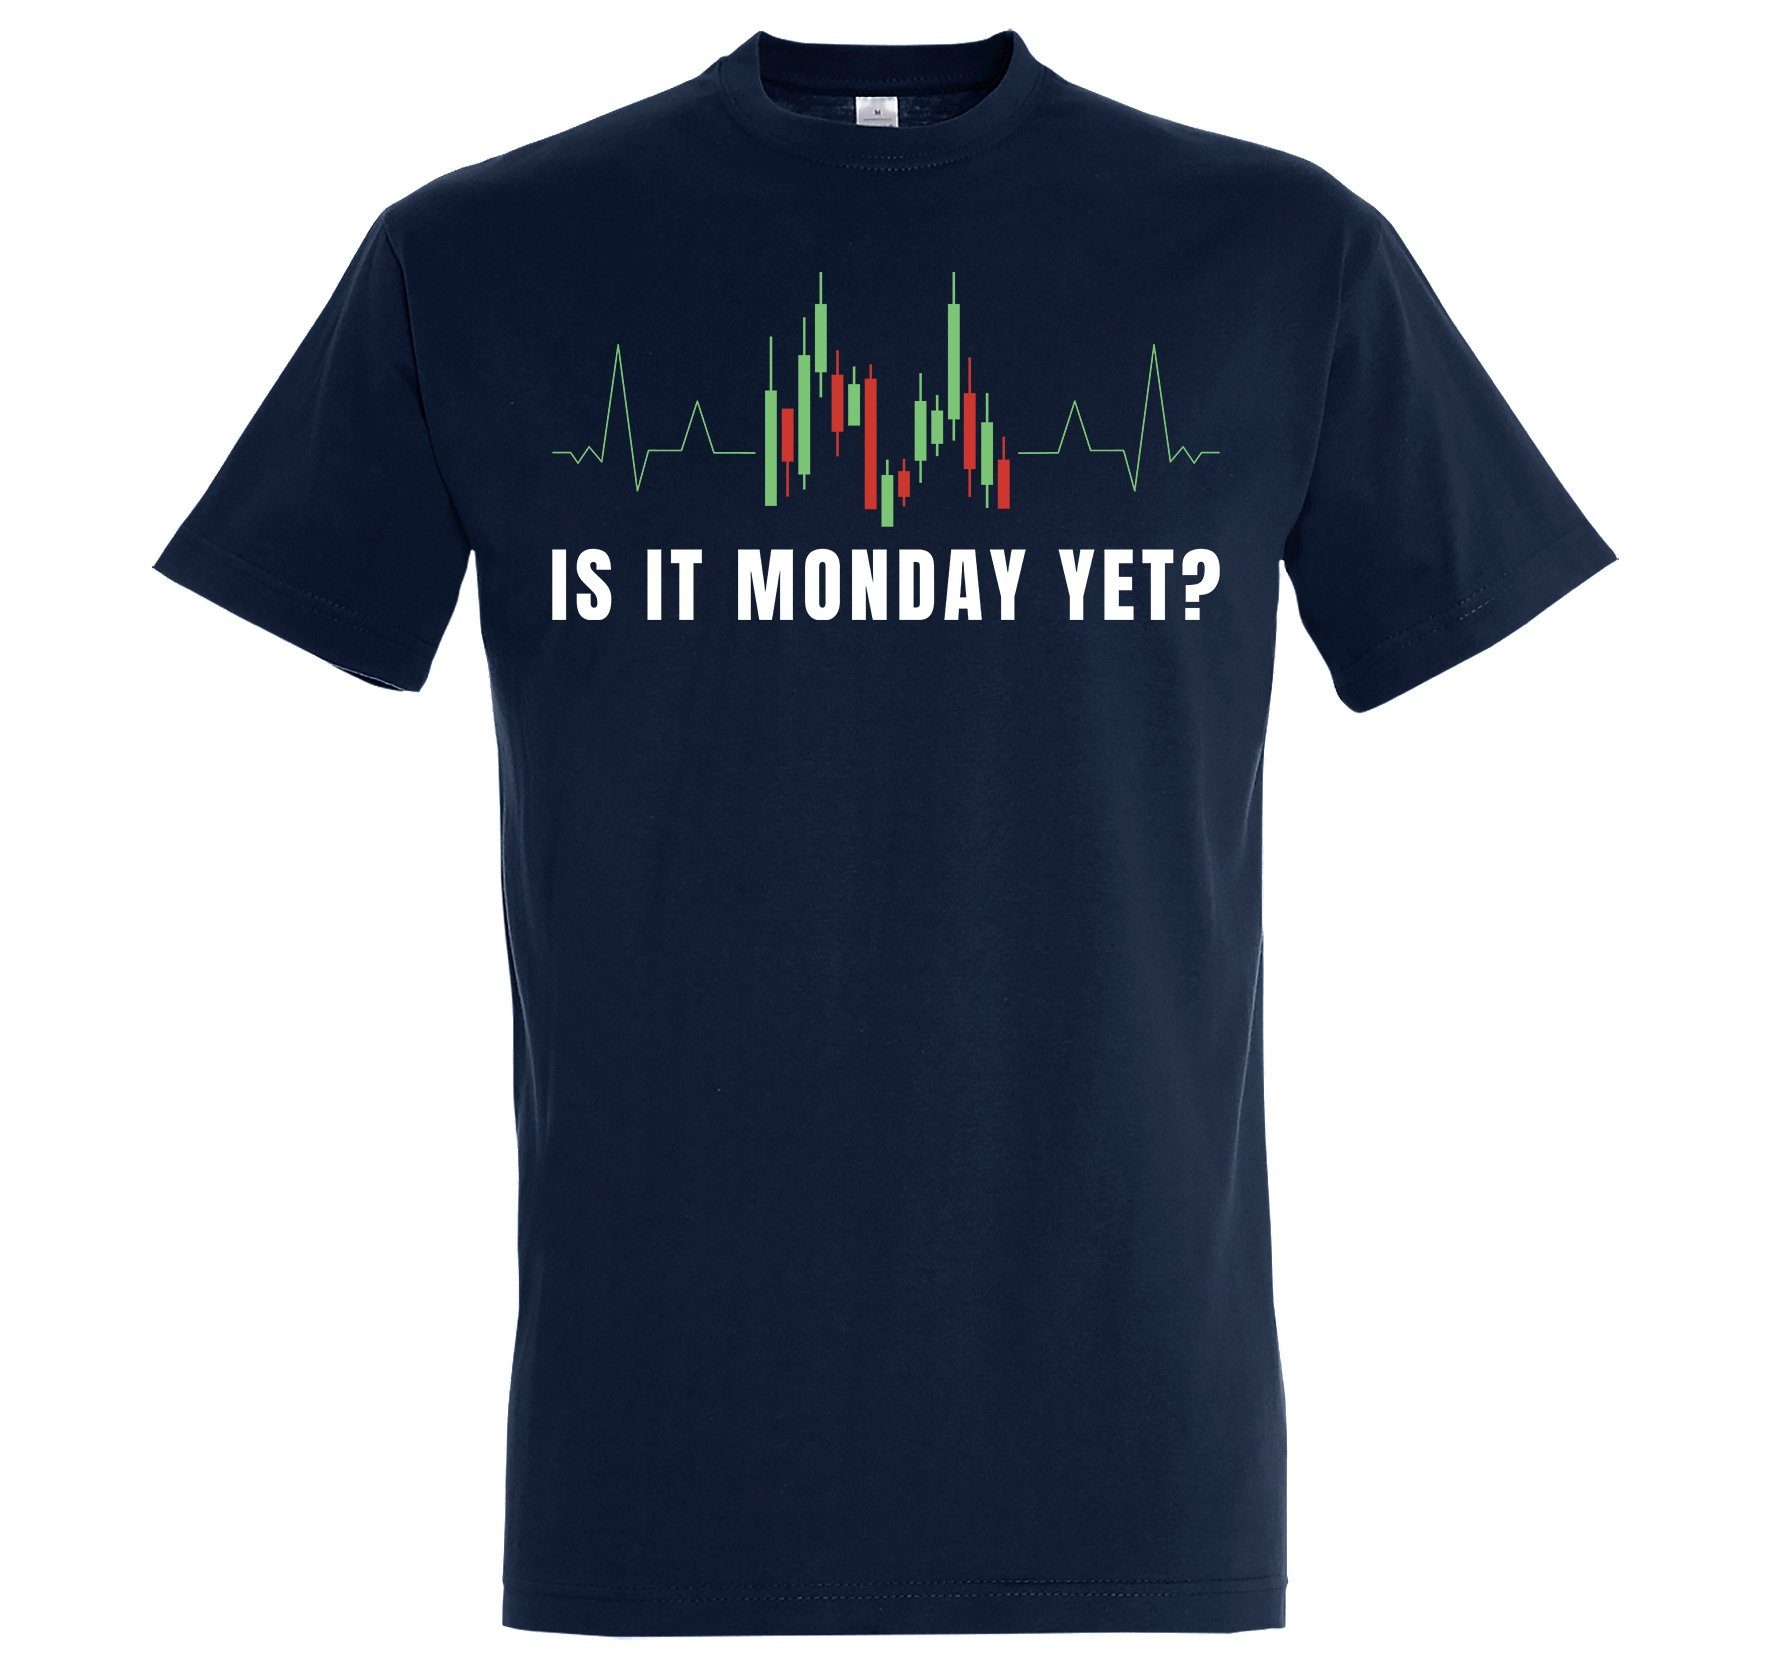 Youth Designz Print-Shirt "Is It Monday Yet?" Herren Shirt mit lustigem Spruch Navy Blau